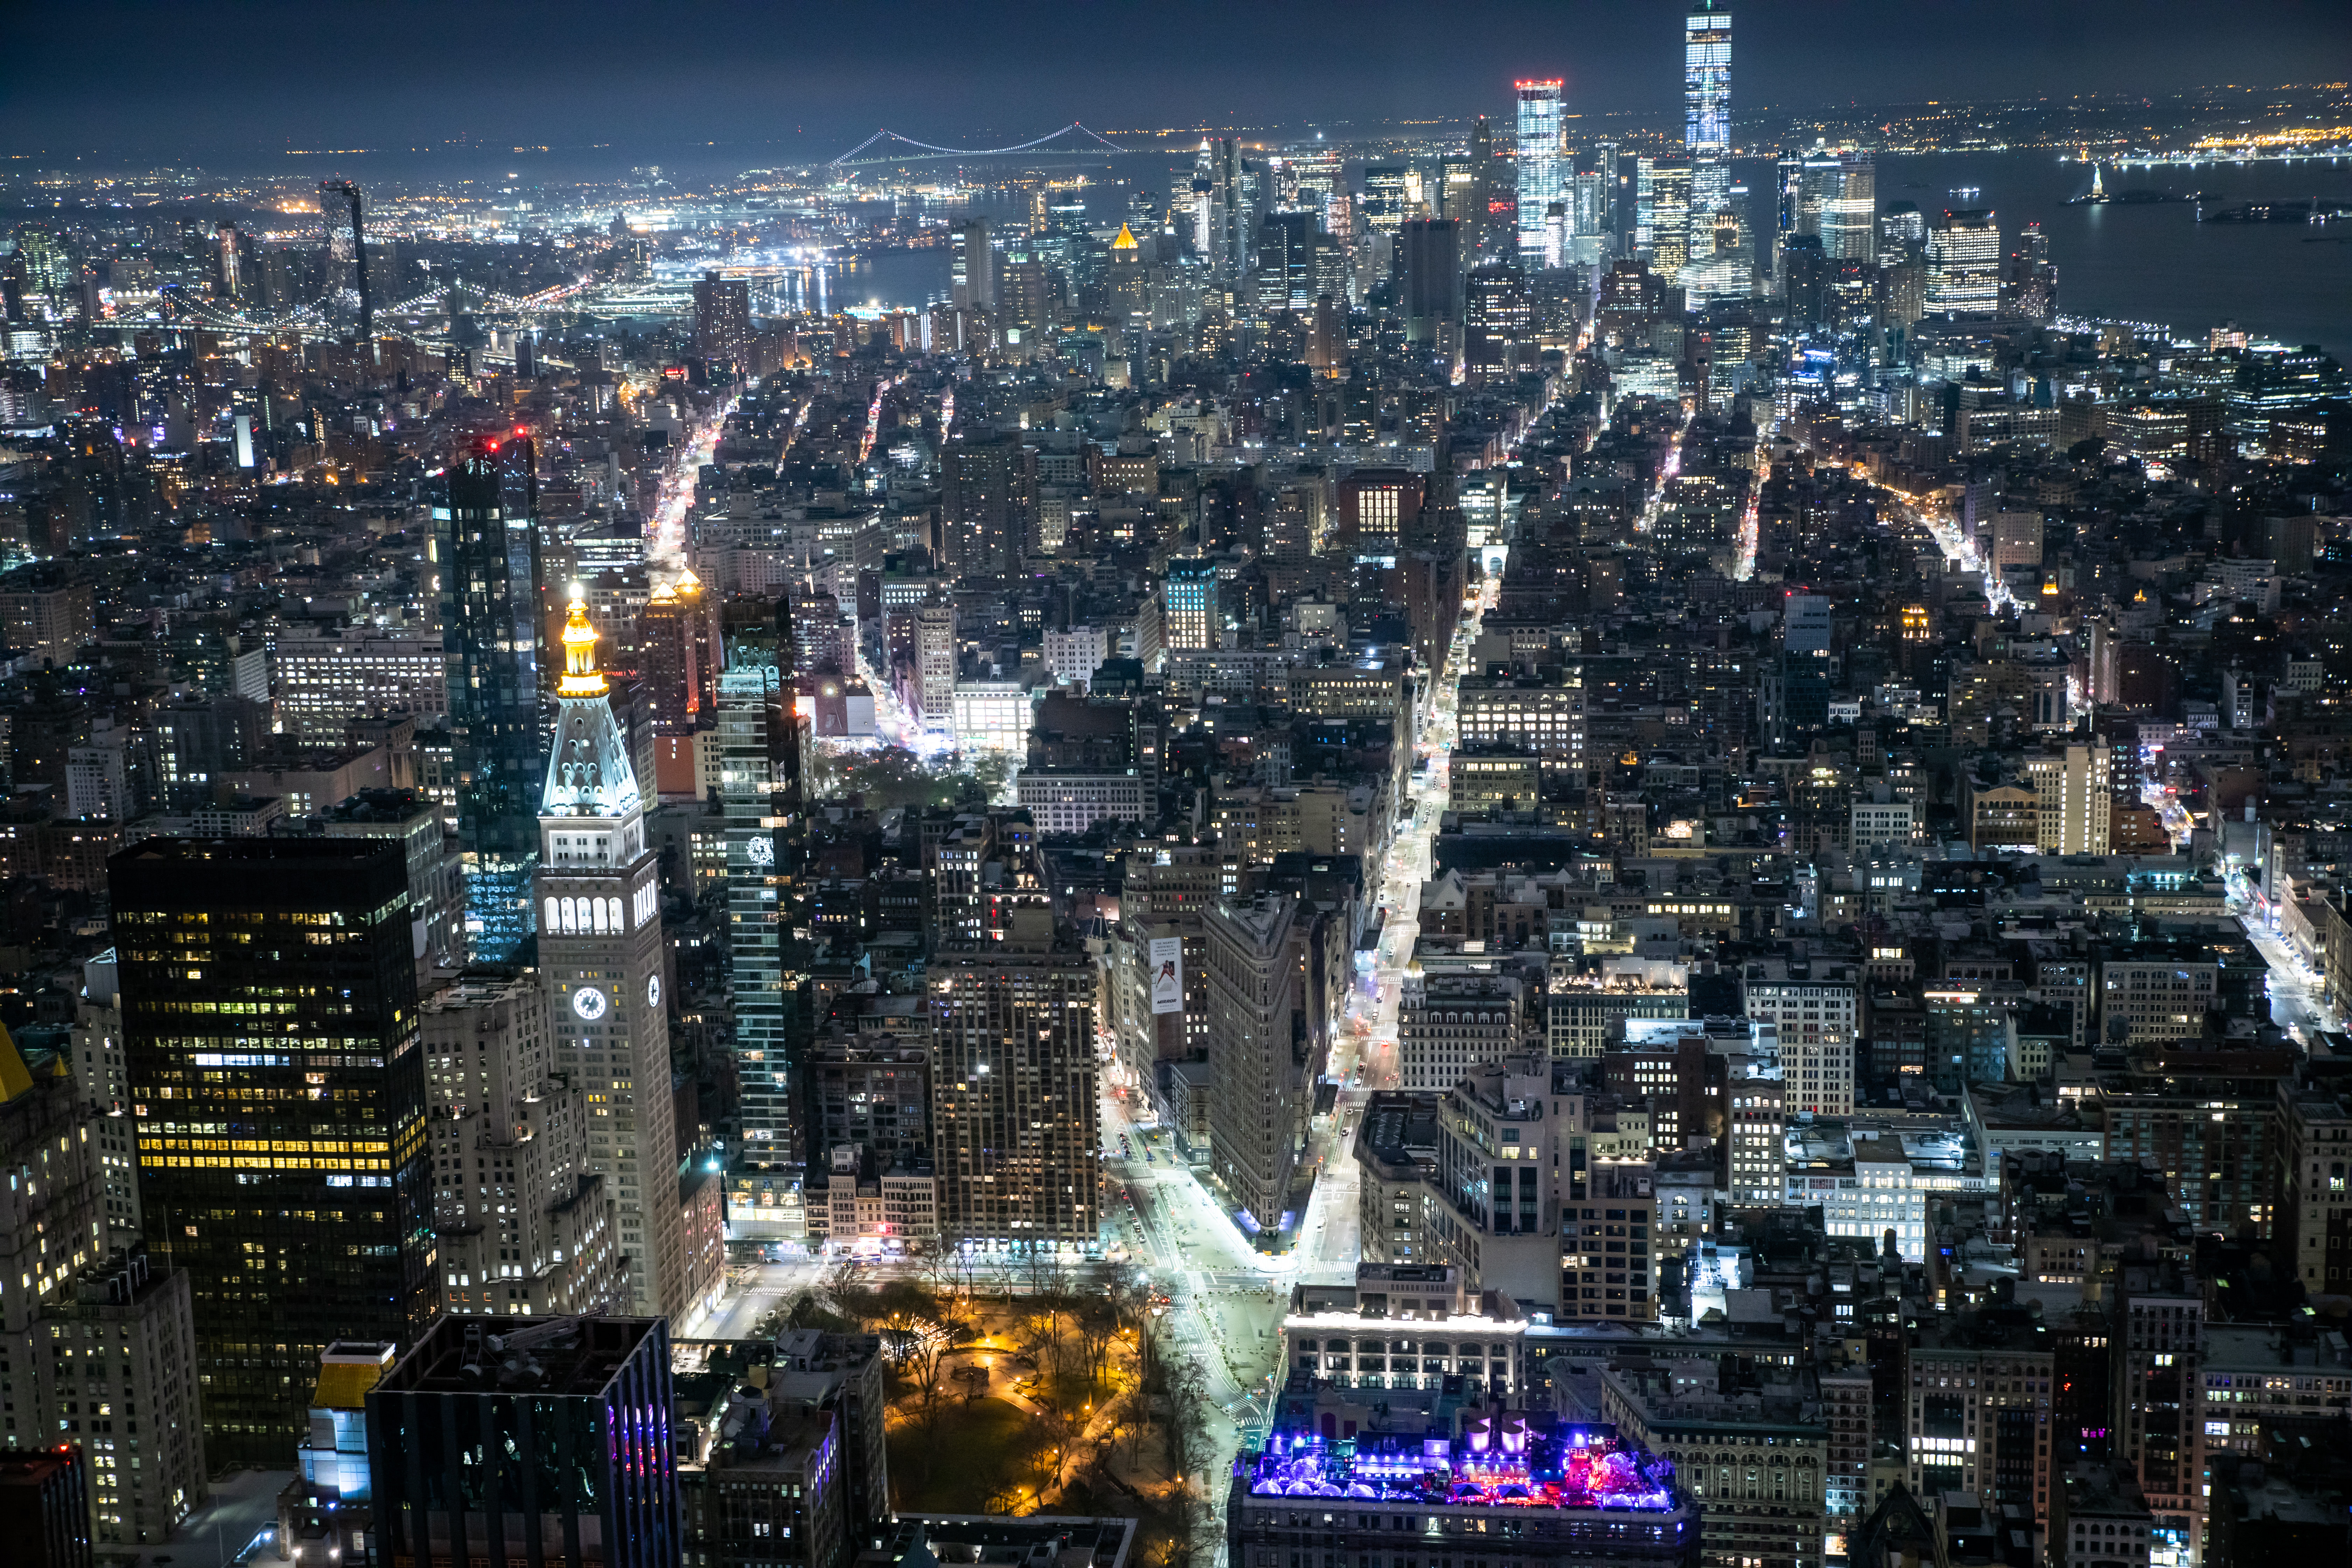 エンパイアステートビル展望台から見た夜景 ニューヨーク の写真素材 ぱくたそ